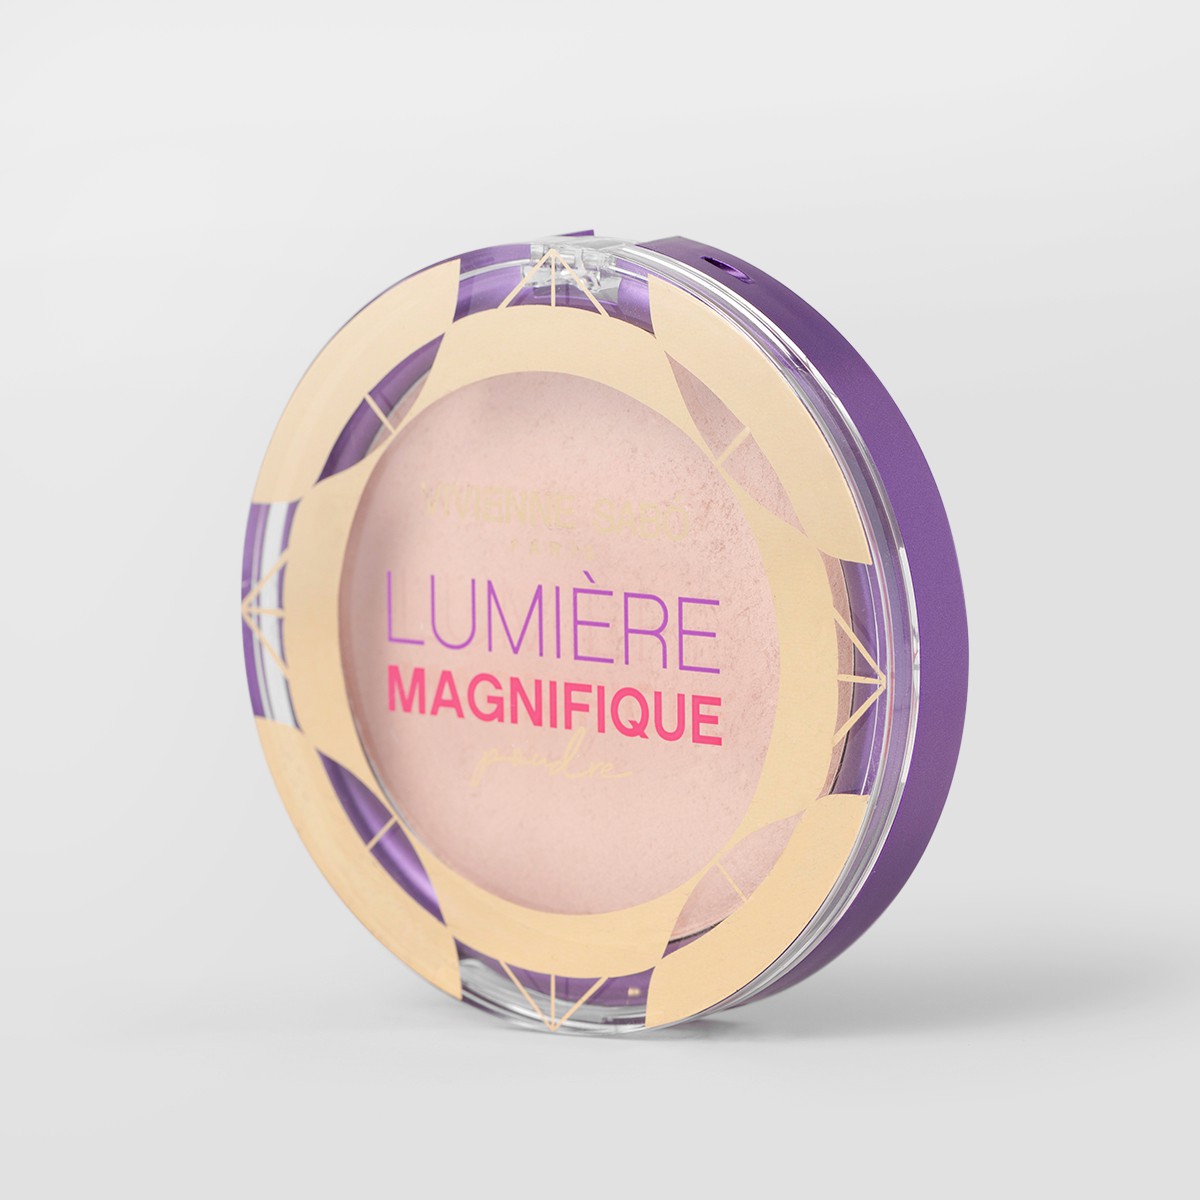 Vivienne Sabo - Lighting Powder Lumiere Magnifique